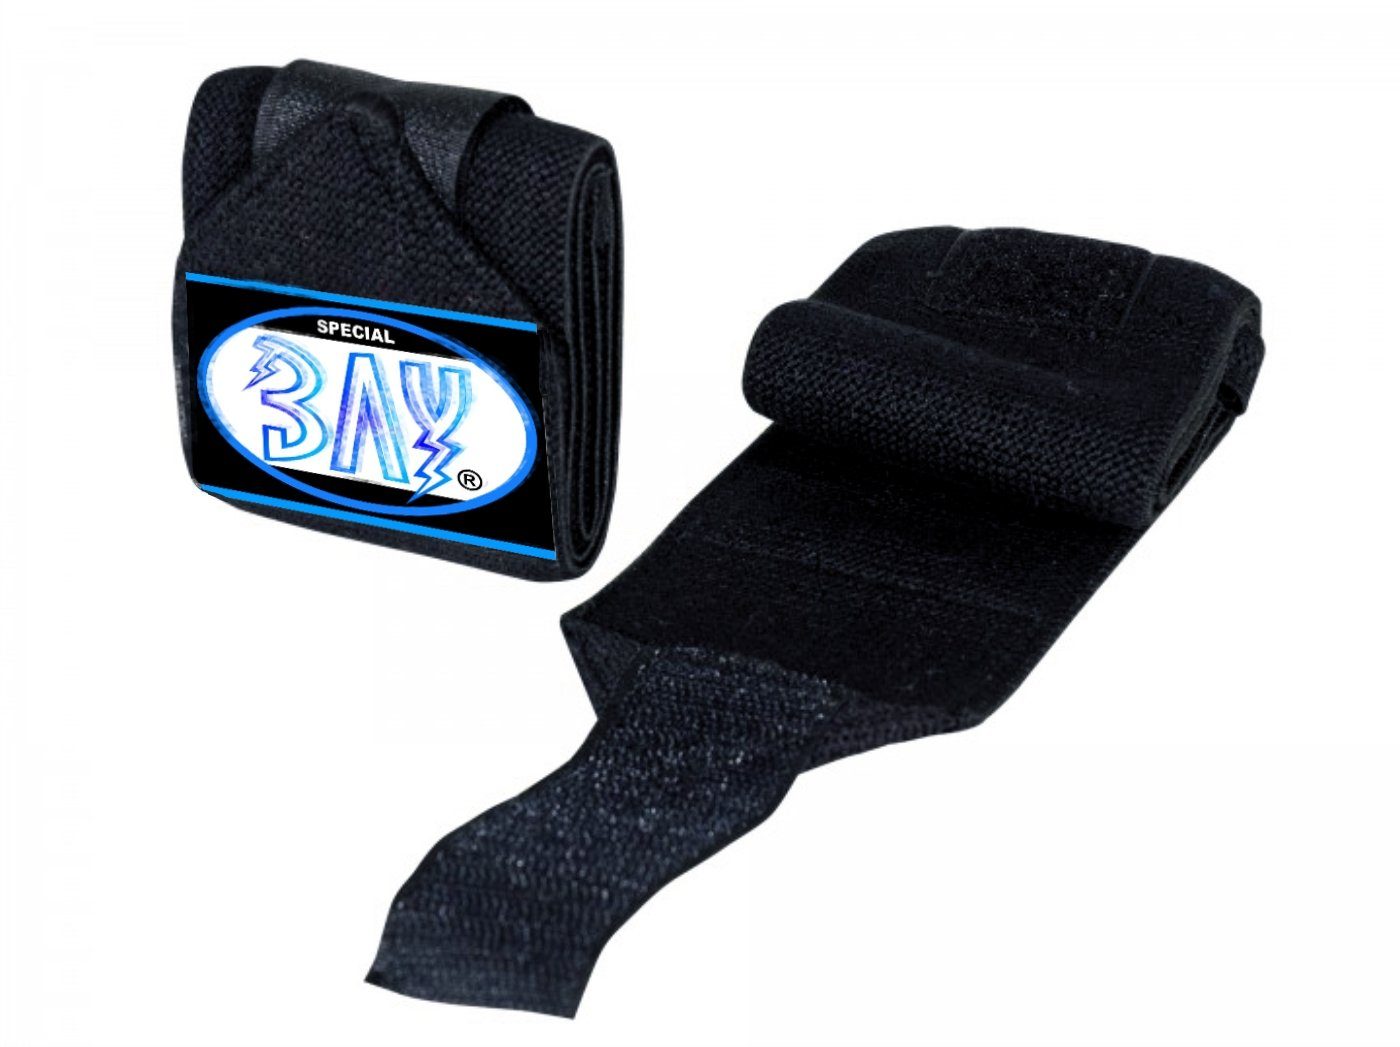 BAY-Sports Ellenbogenschutz Ellbogenbandagen extrem zum Wickeln Kraftsport BAY Wrist Wraps, Klettverschluss, besonders fest fixierbar, 3 Farben schwarz